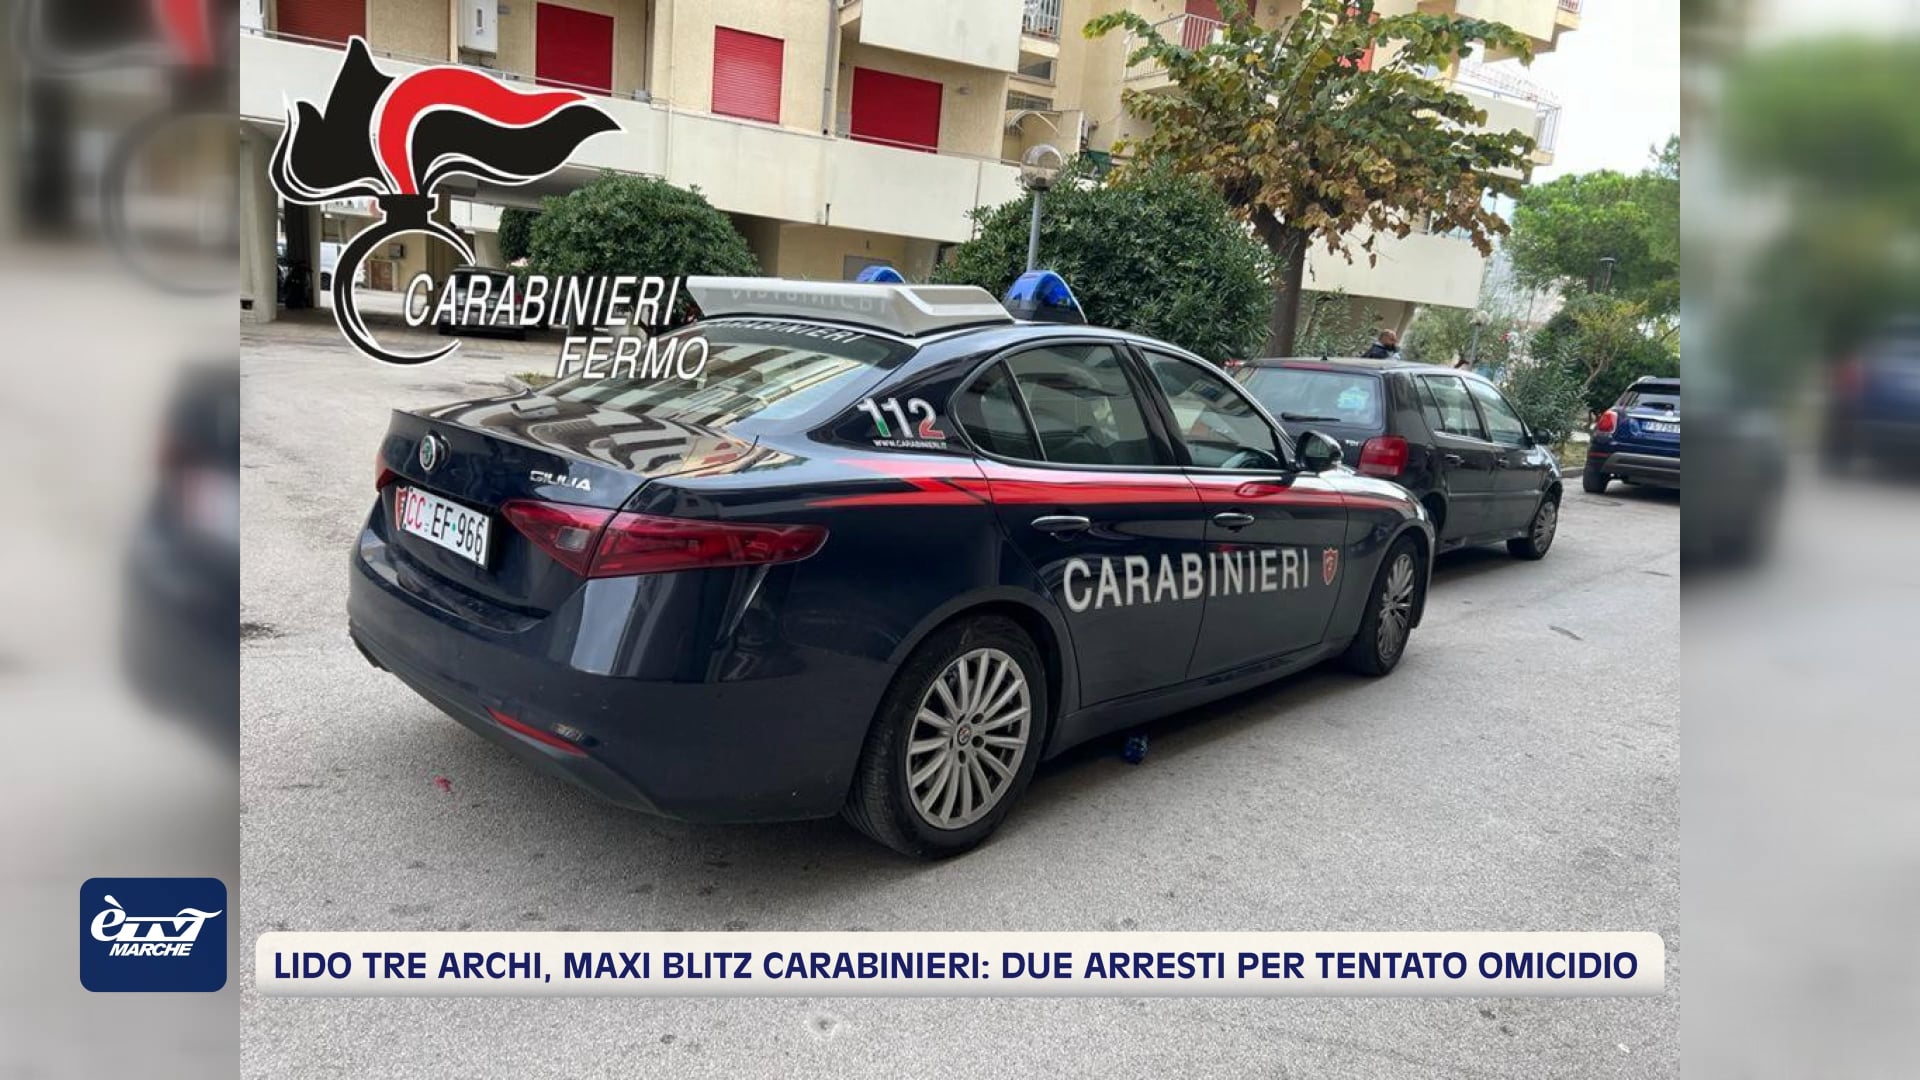 Lido Tre Archi, maxi blitz dei carabinieri: due arresti per tentato omicidio - VIDEO